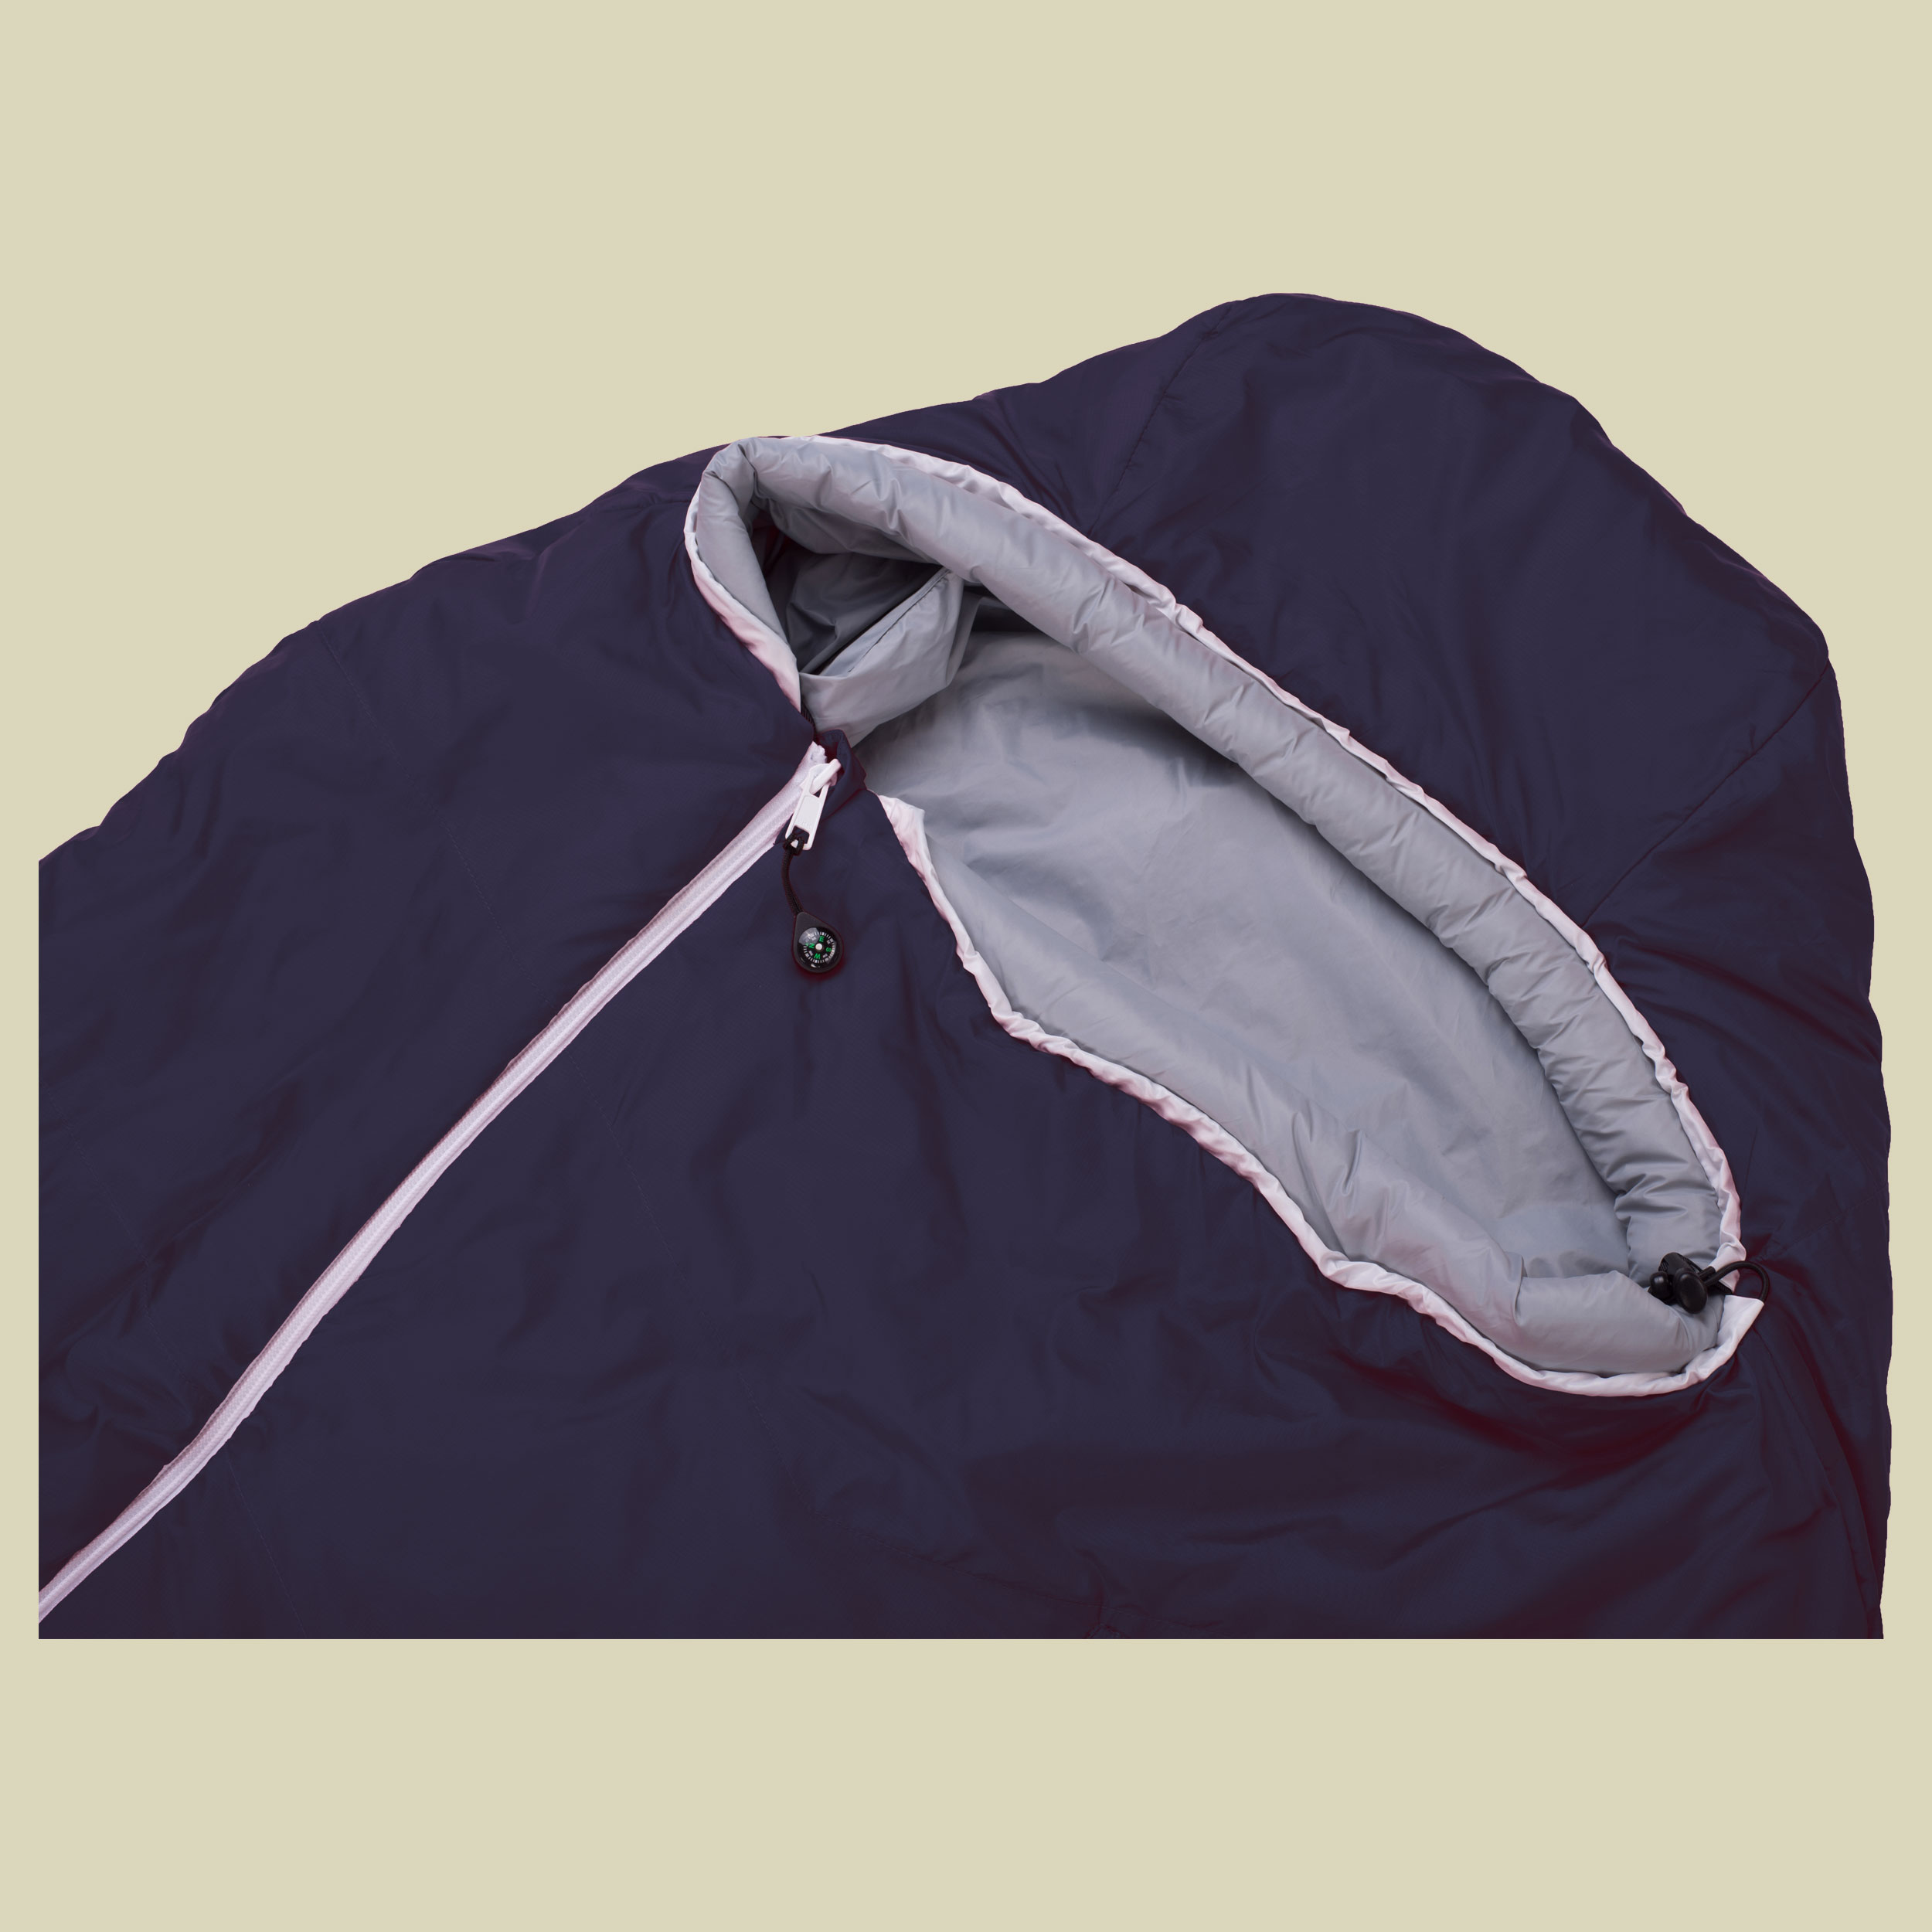 Biopod Wolle Zero bis Körpergröße Schlafsack  185 cm Farbe night blue